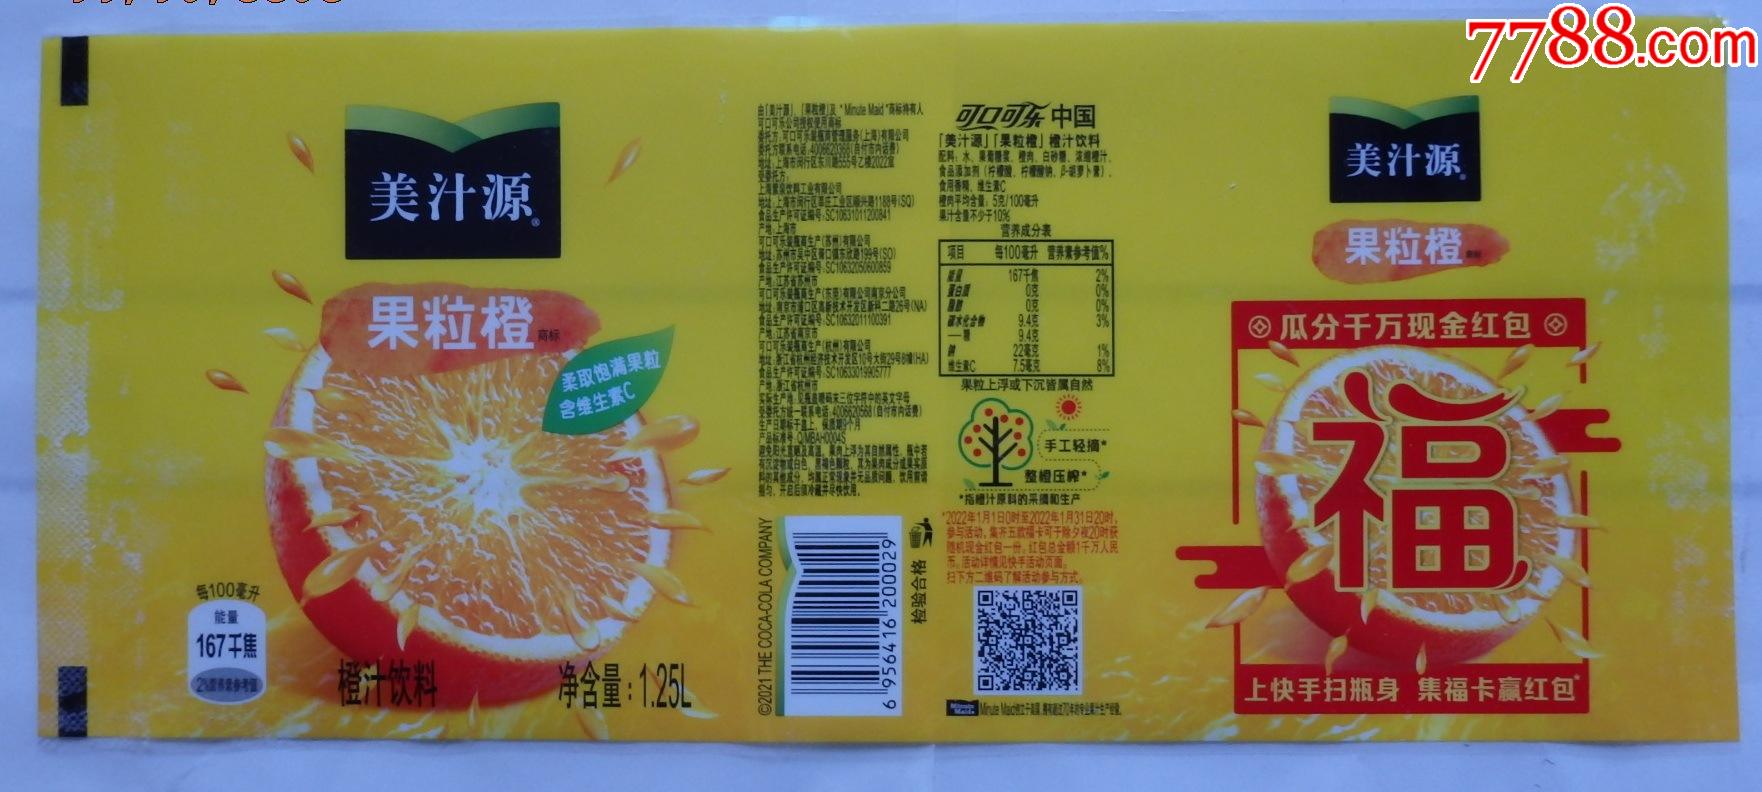 美汁源果粒橙瓜分千万现金红包福字商标1枚